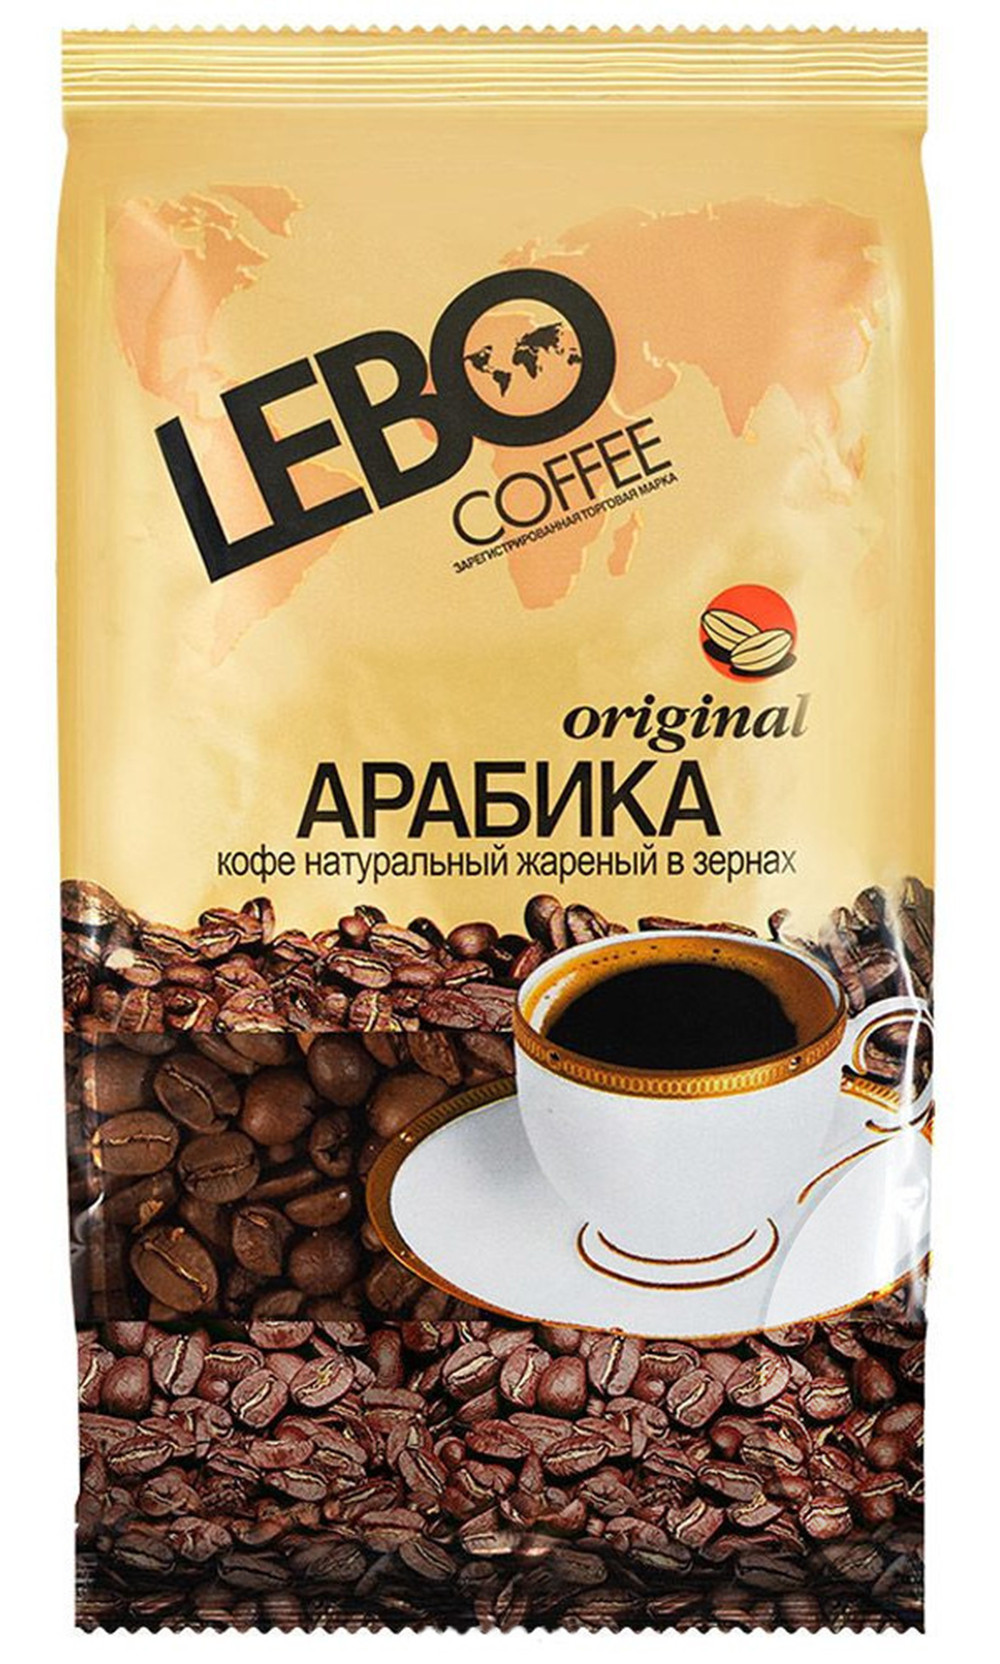 Кофе Лебо Оригинал зерно 500г - интернет-магазин Близнецы